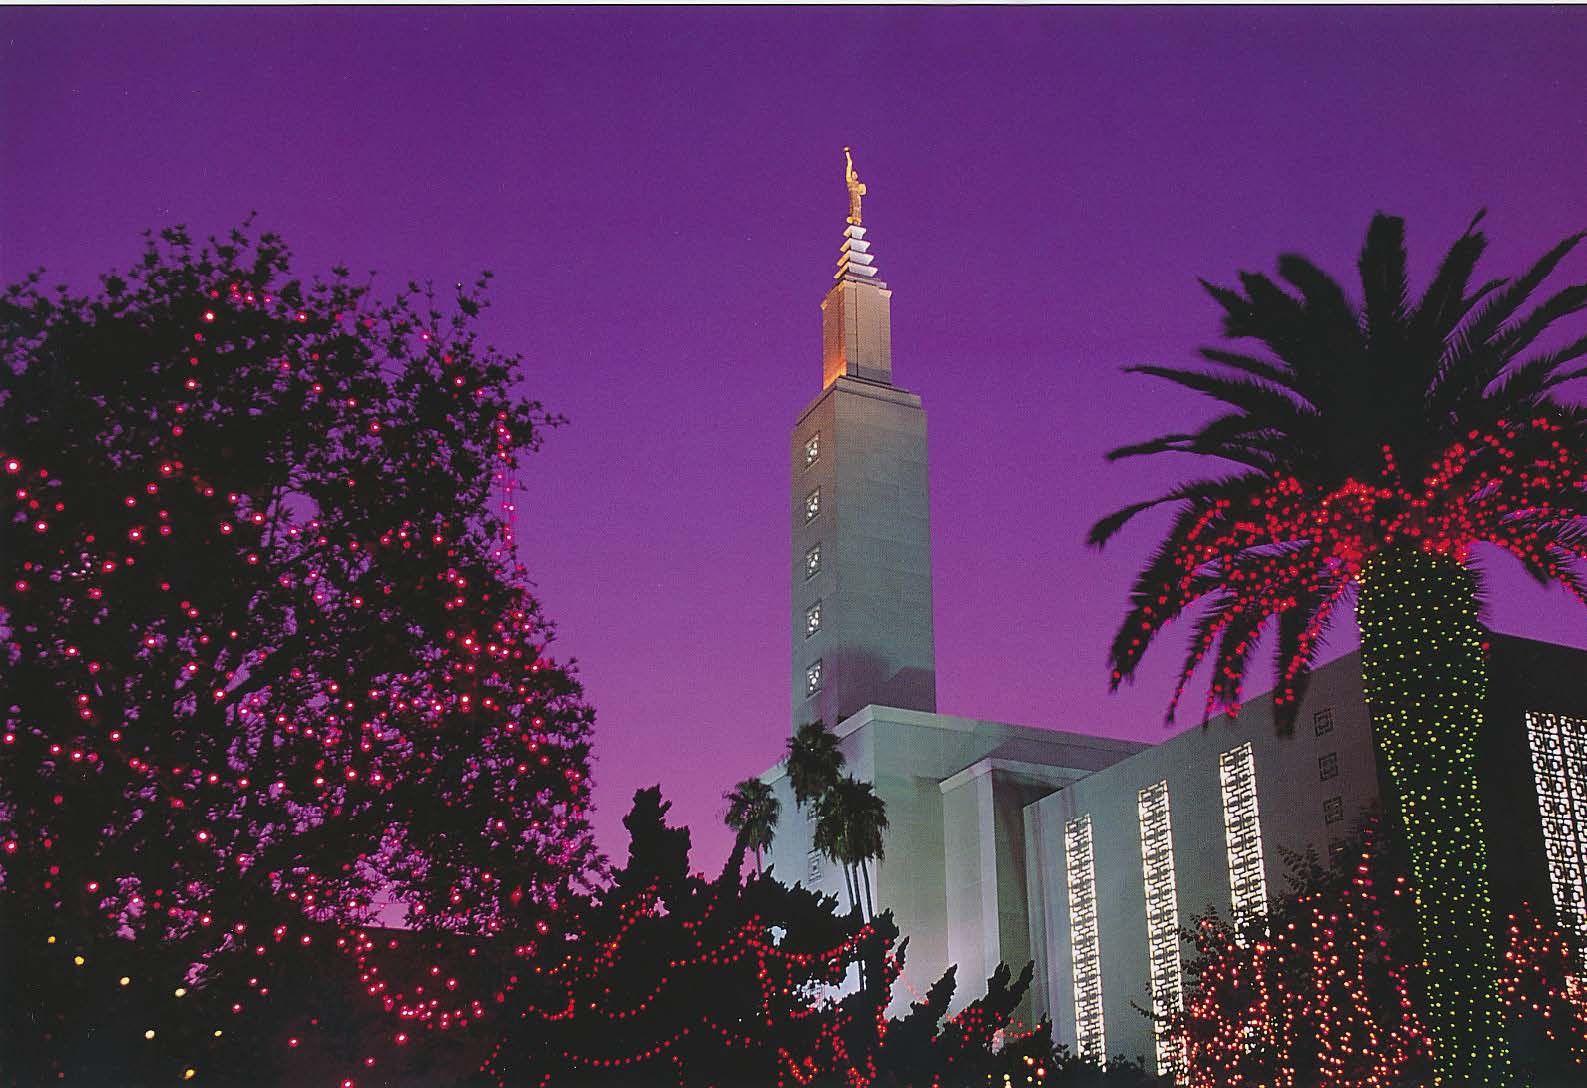 Temple Christmas lights